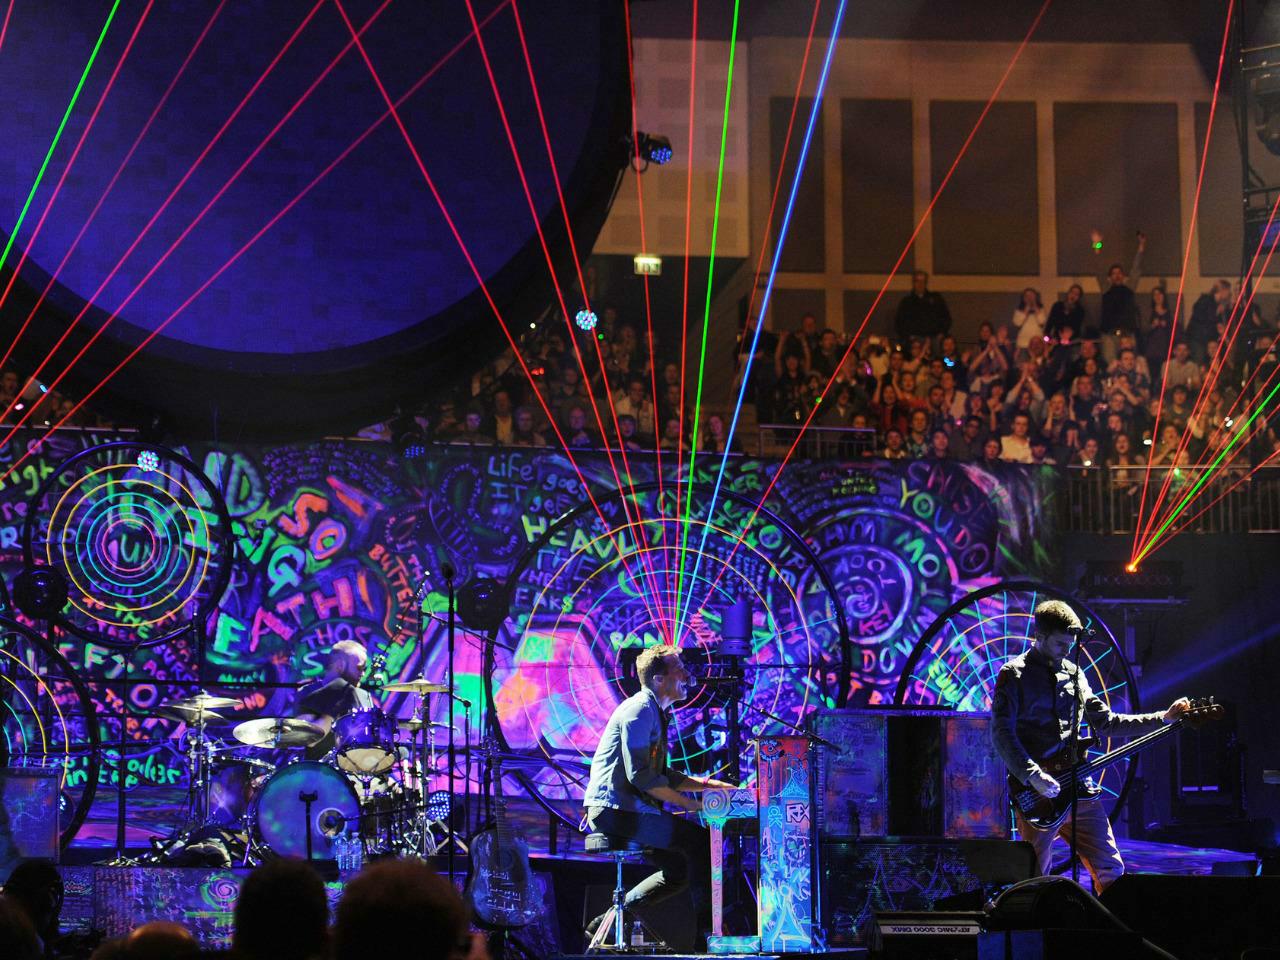 Coldplay - Mylo Xyloto Tour 2011